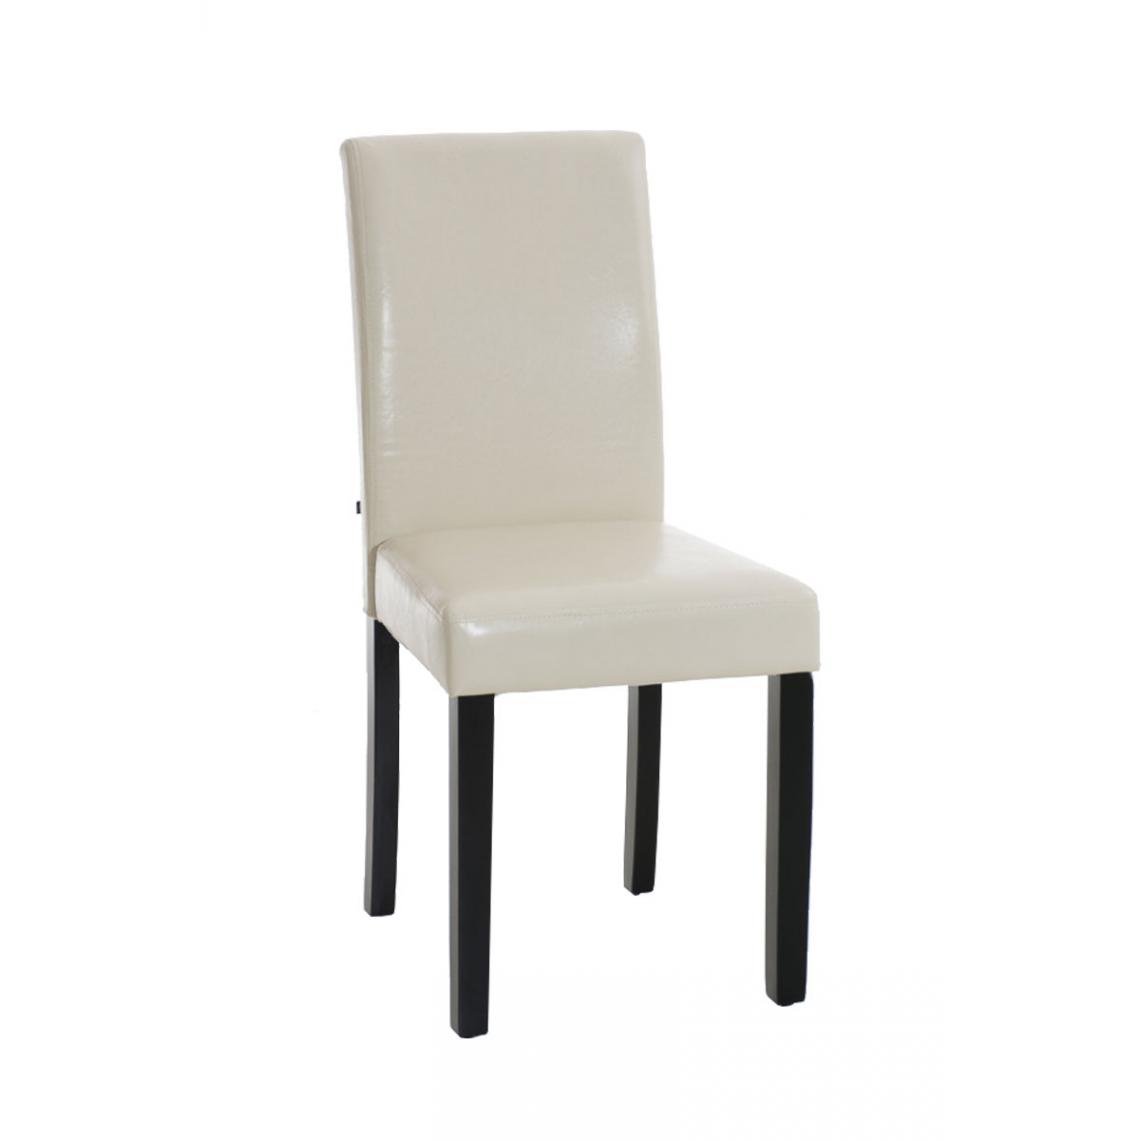 Icaverne - Admirable Chaise de salle à manger categorie Rabat noir couleur crème - Chaises